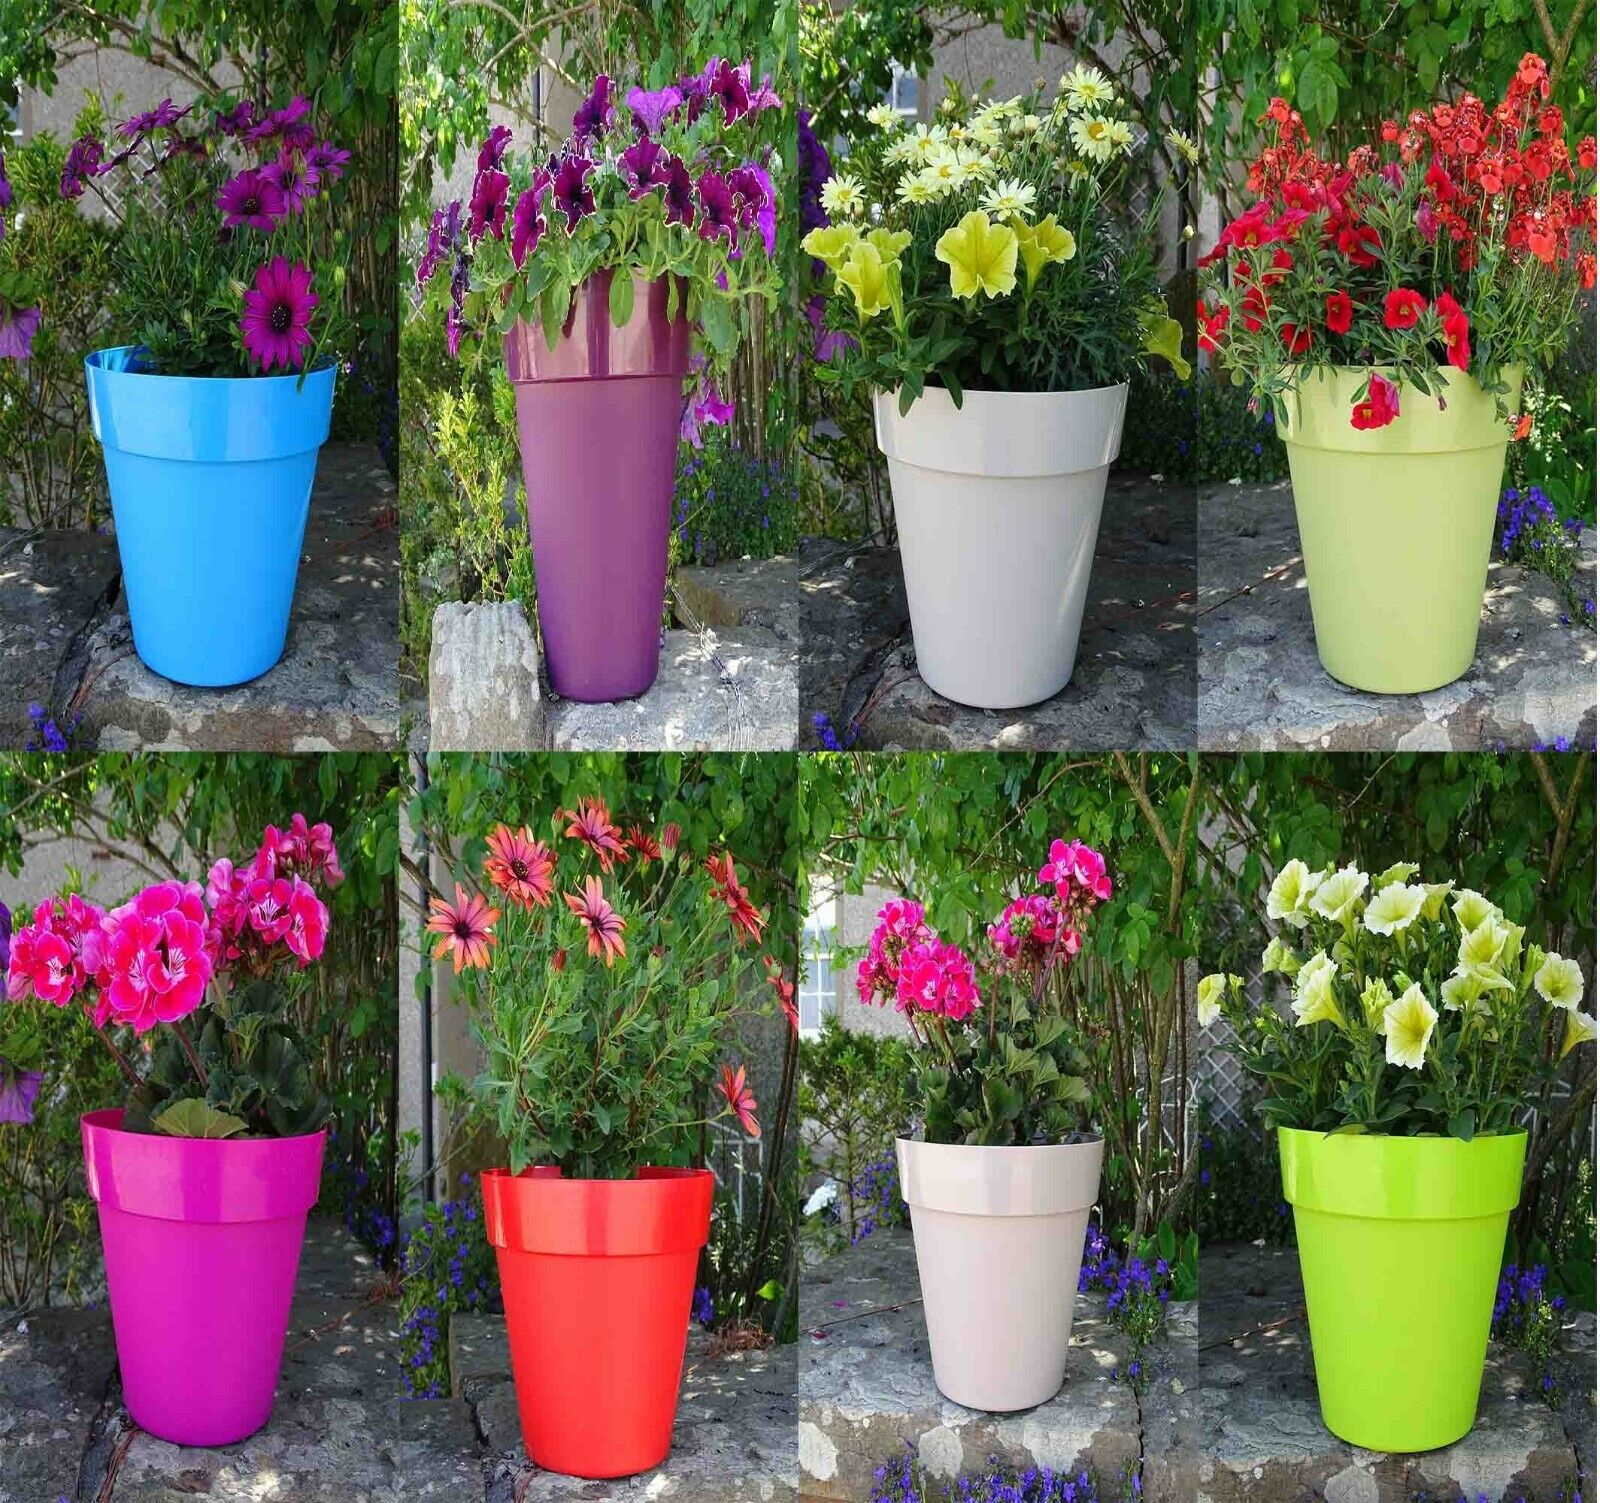 26cm Colourful Round Plastic Plant Pot Garden Planter Trends Flower Pots Outdoor